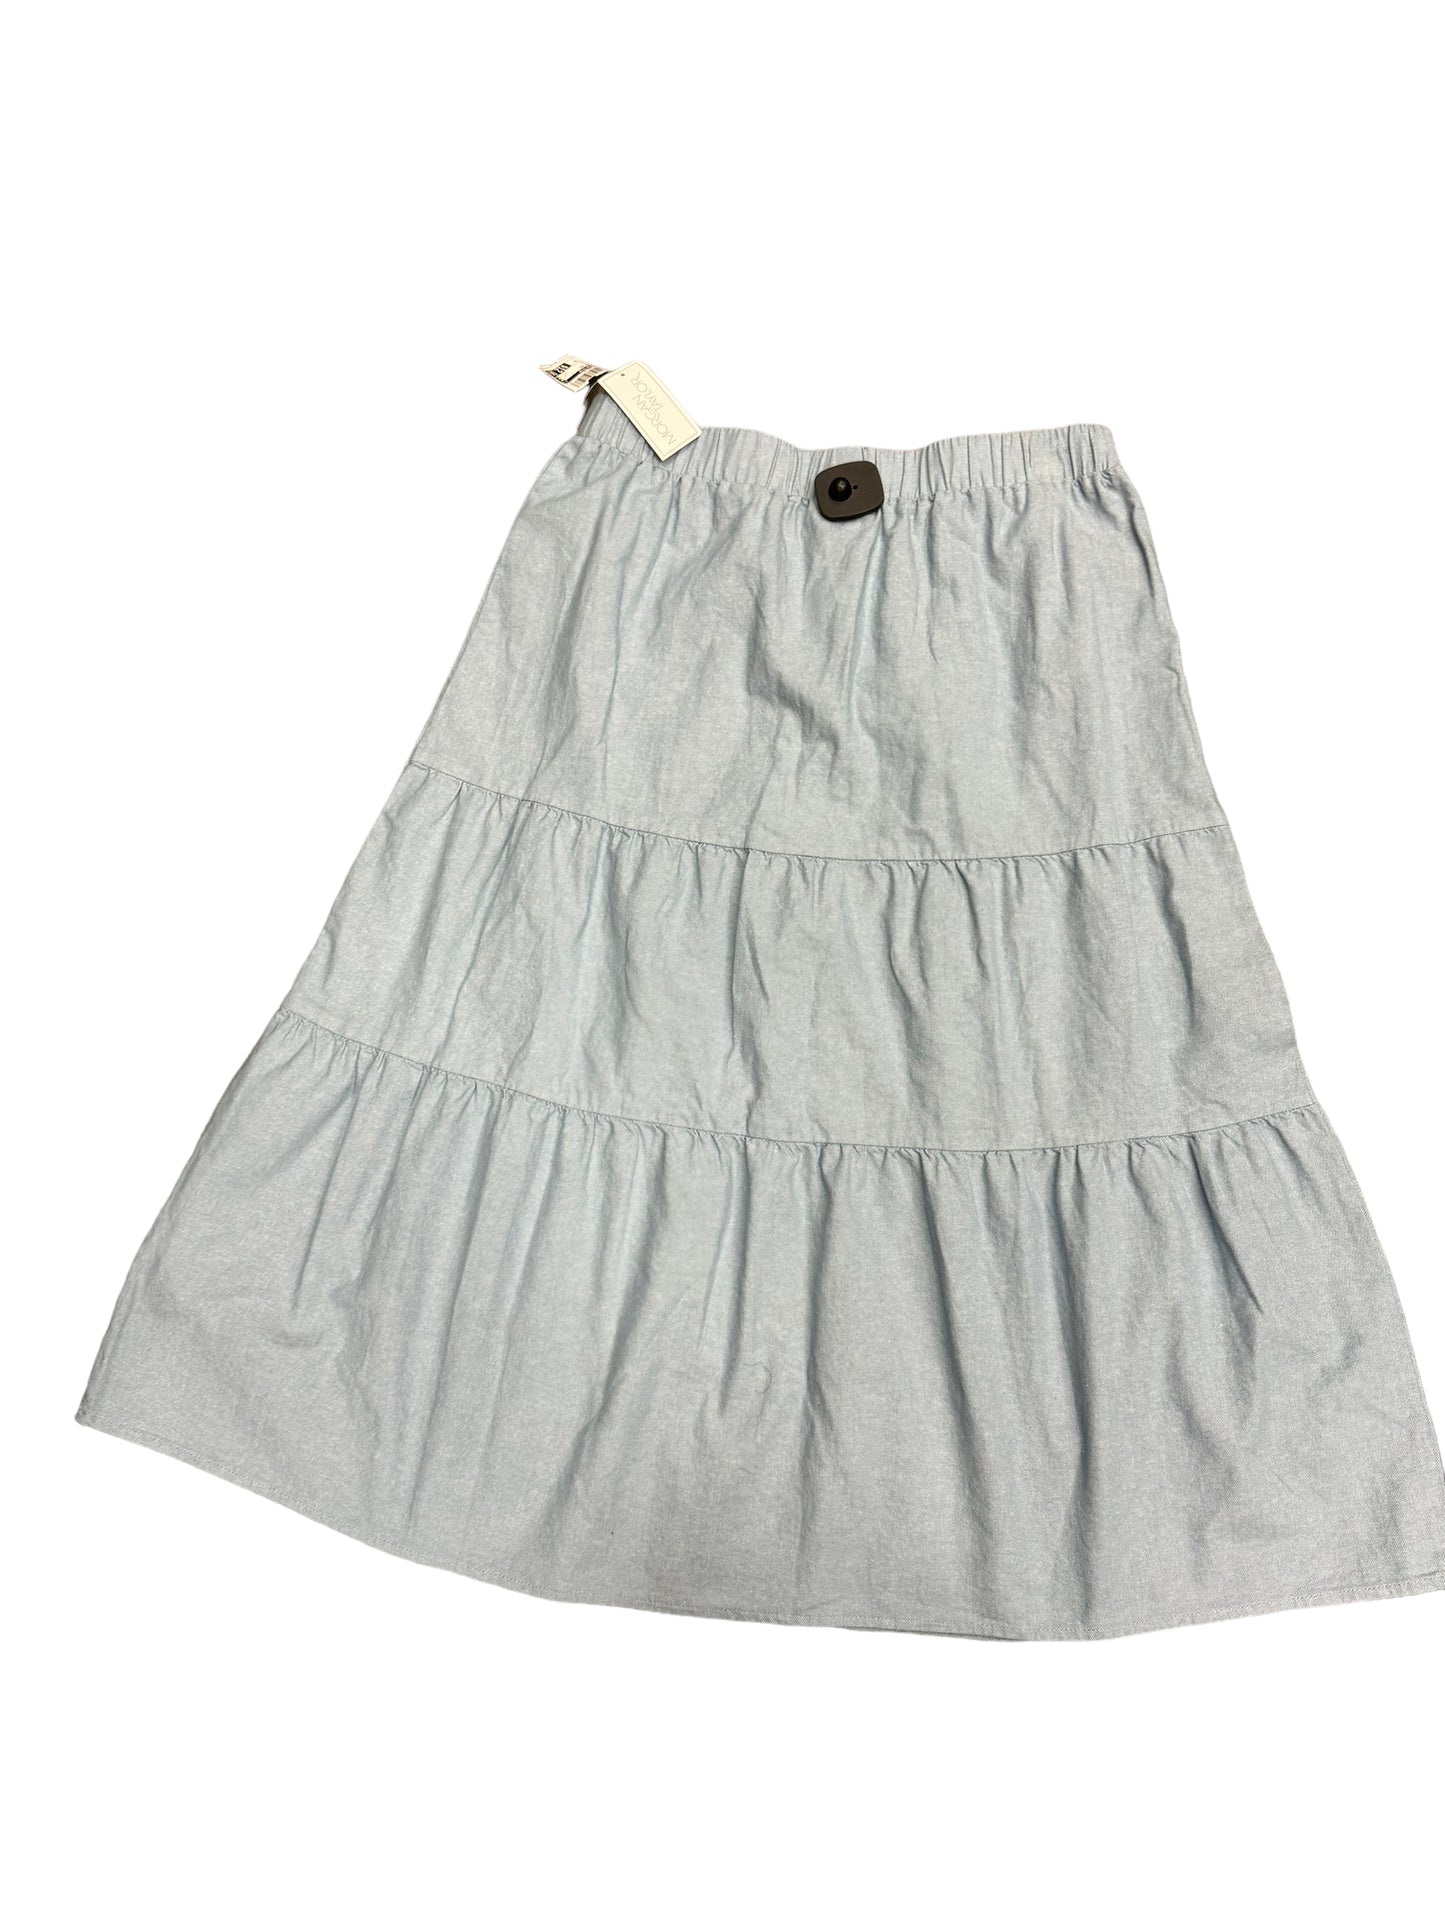 Skirt Maxi By Morgan Taylor  Size: 10